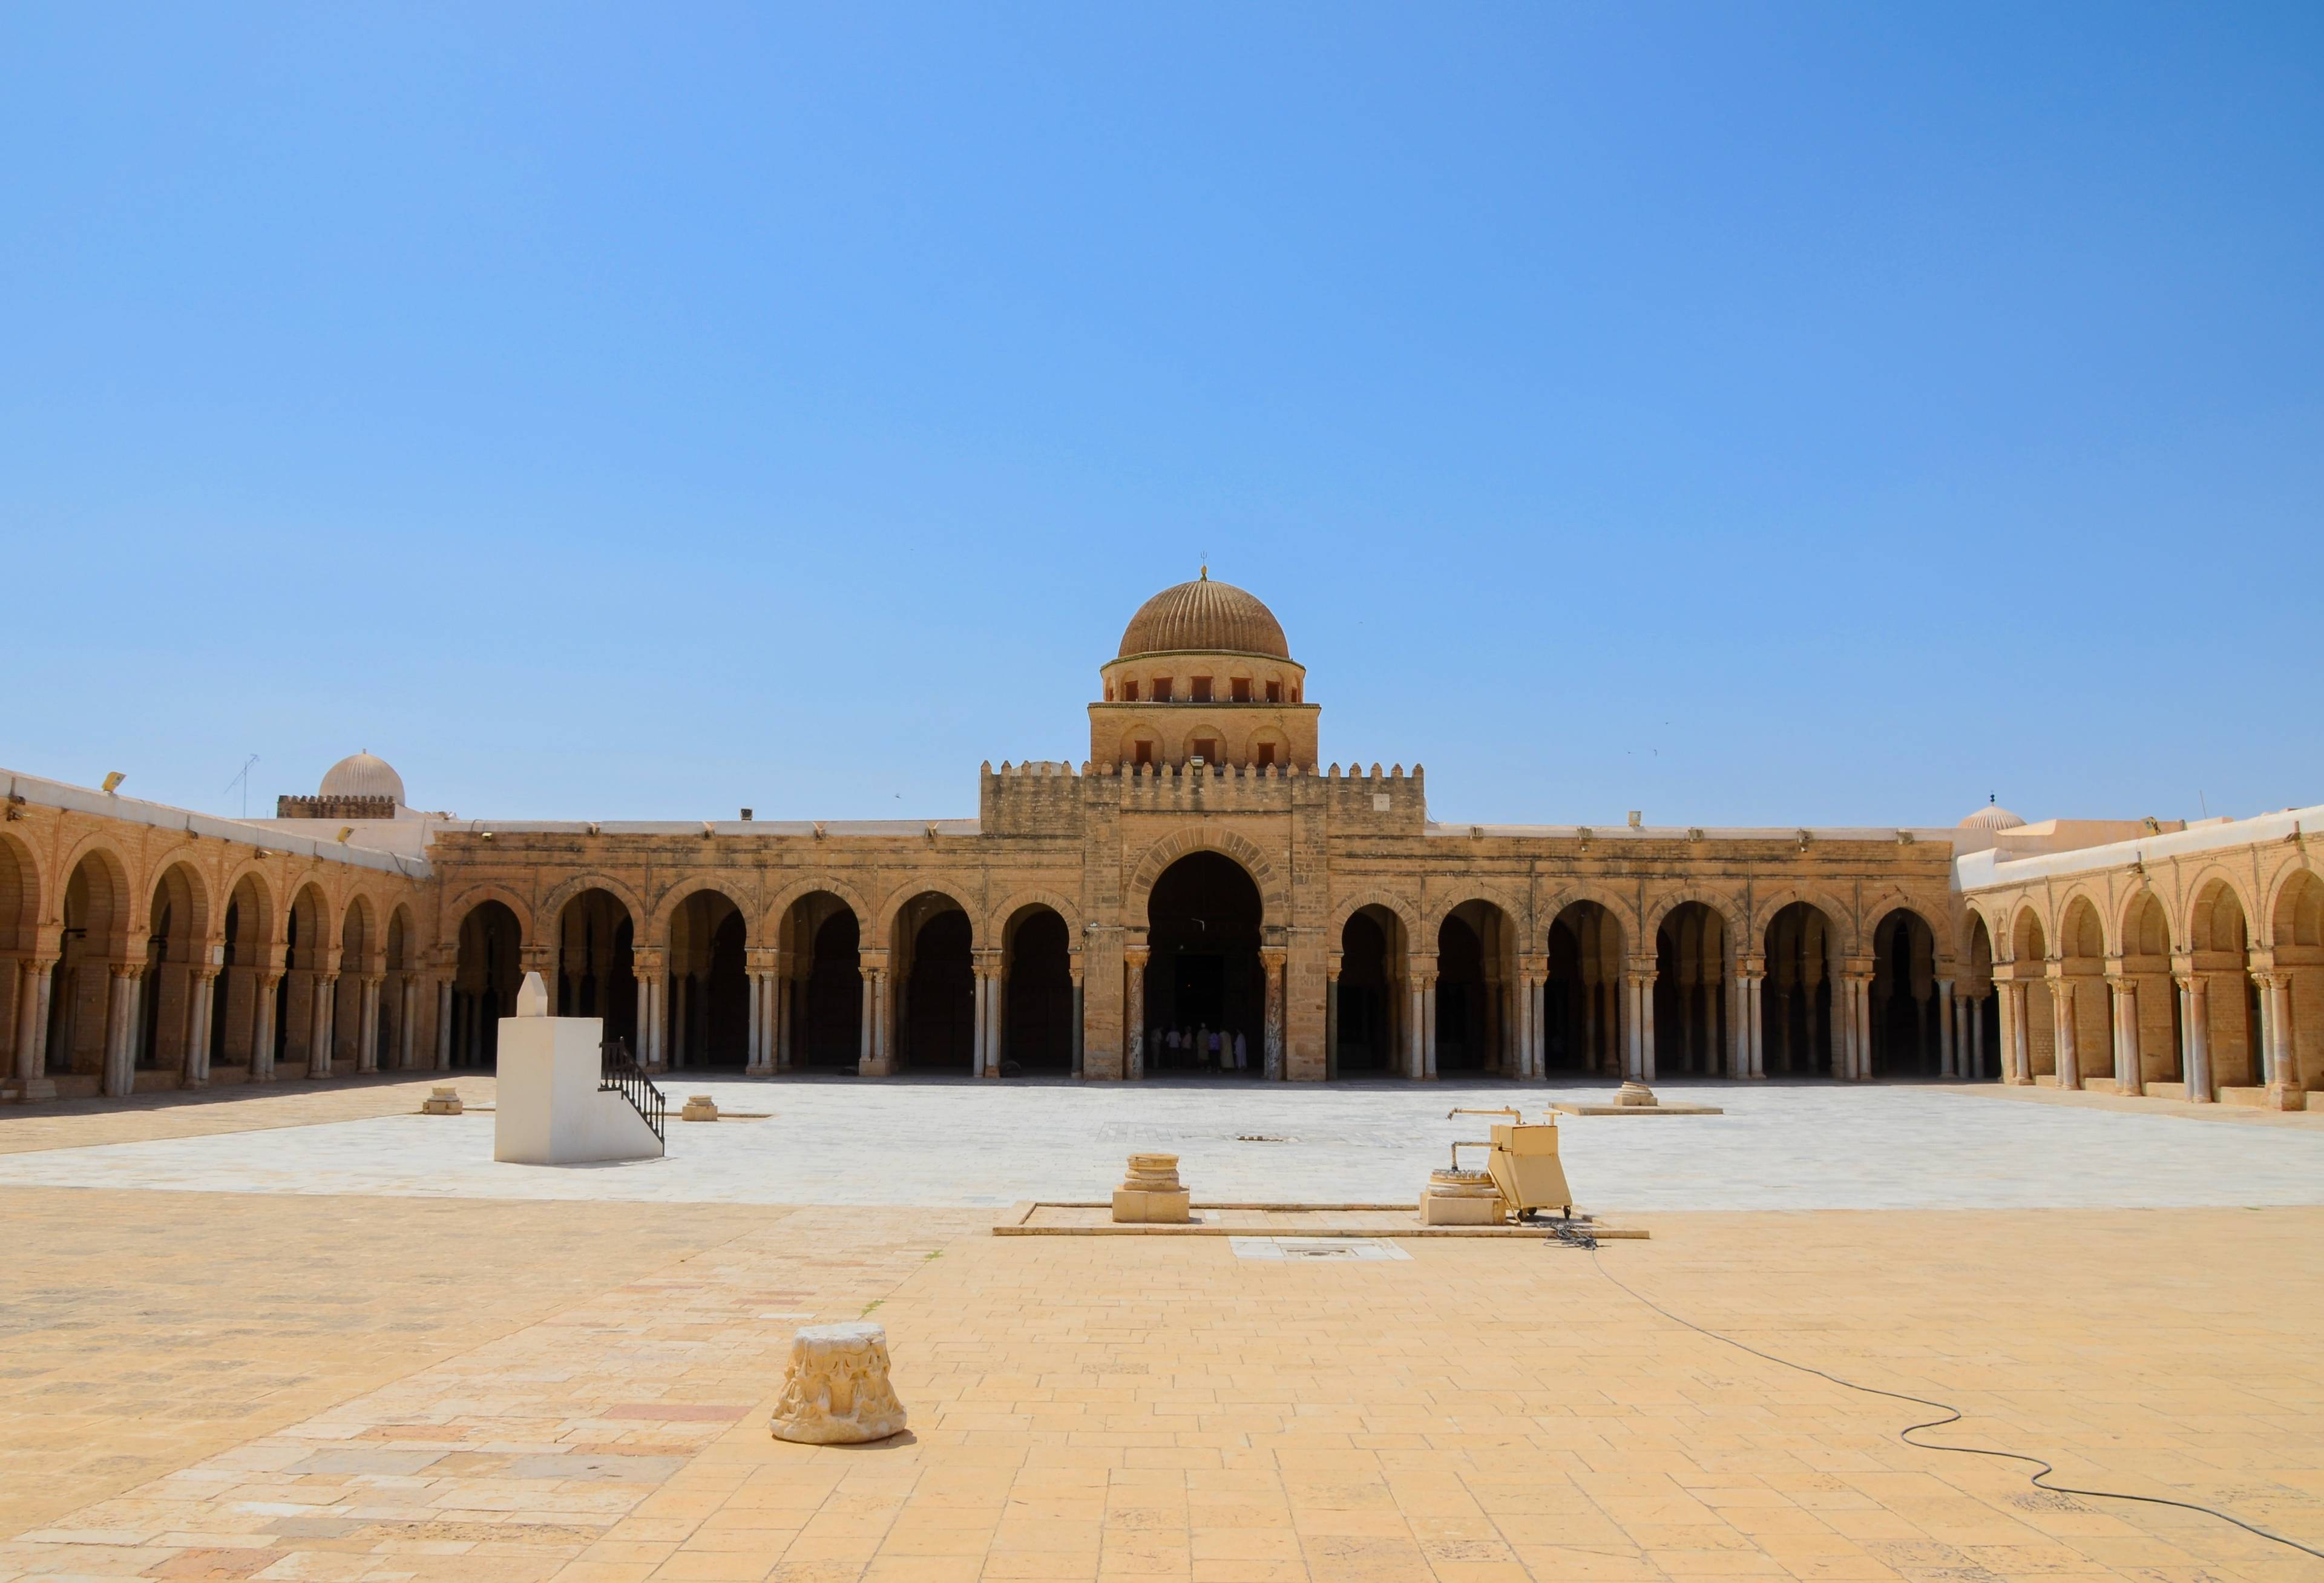 moschea kairouan tunisia